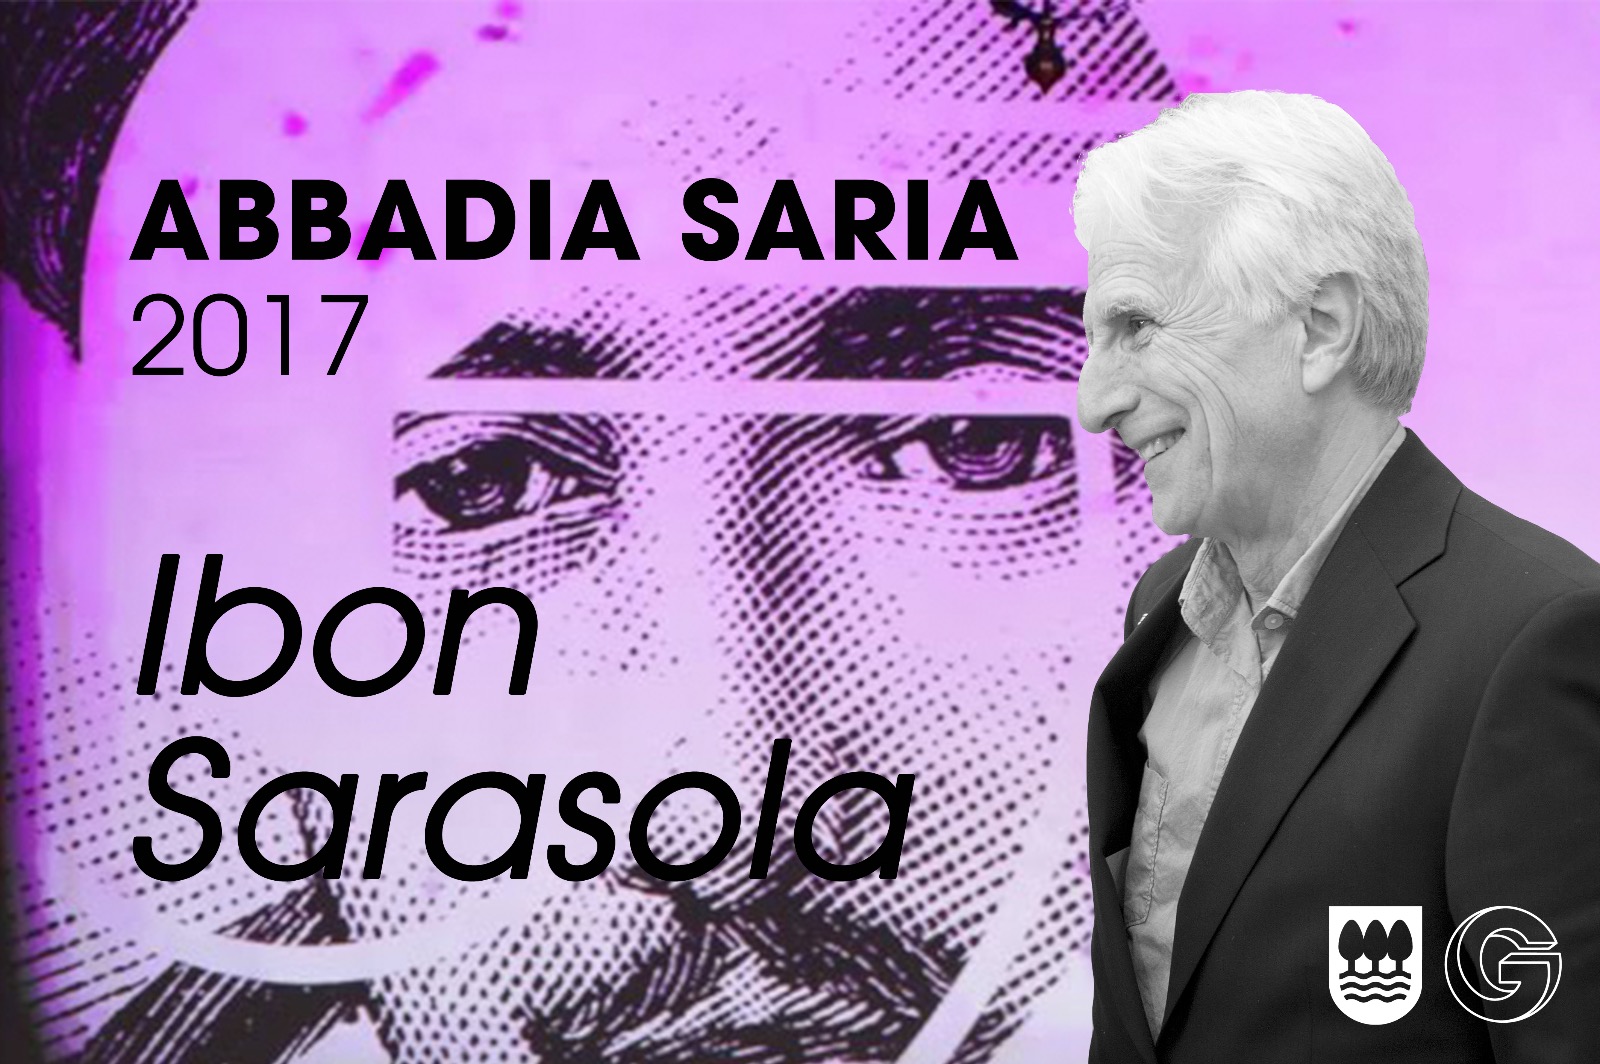 Ibon Sarasola euskaltzain eta hizkuntzalari  donostiarrak jasoko du 2017ko Abbadia Saria...